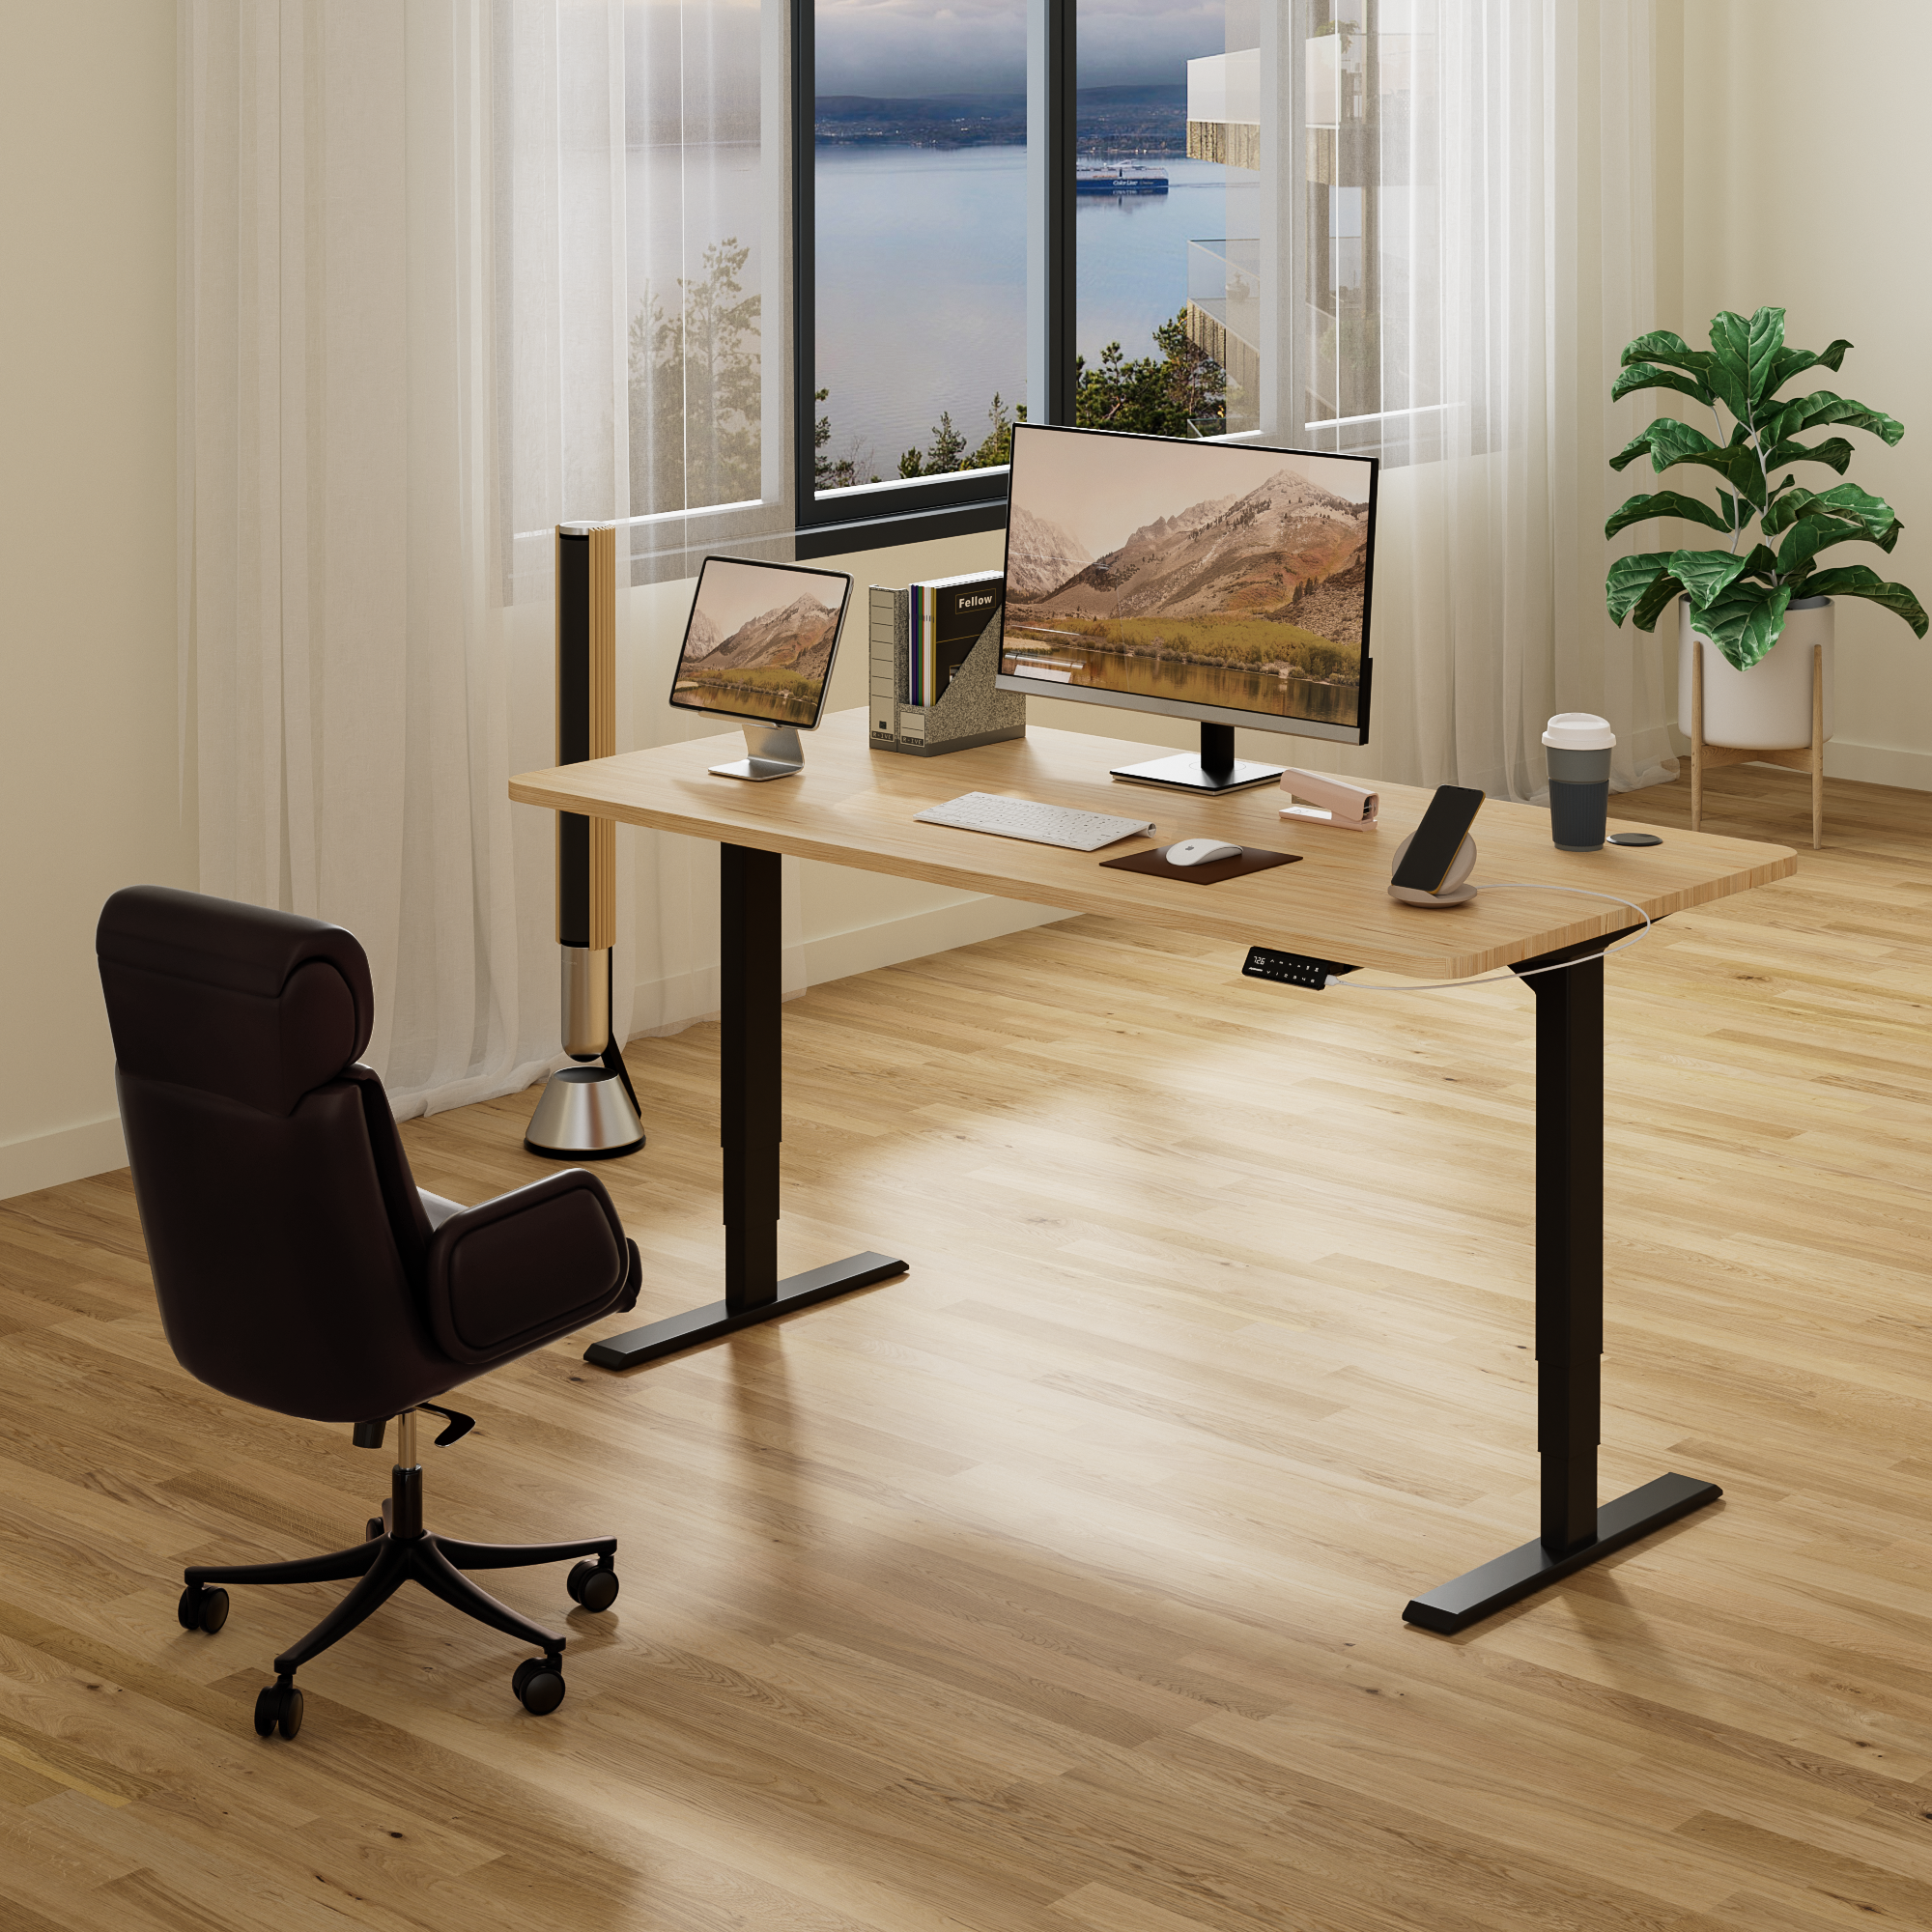 Maidesite S2 Pro - Elektrisch Höhenverstellbarer Schreibtisch 140x70 cm/120x60 cm